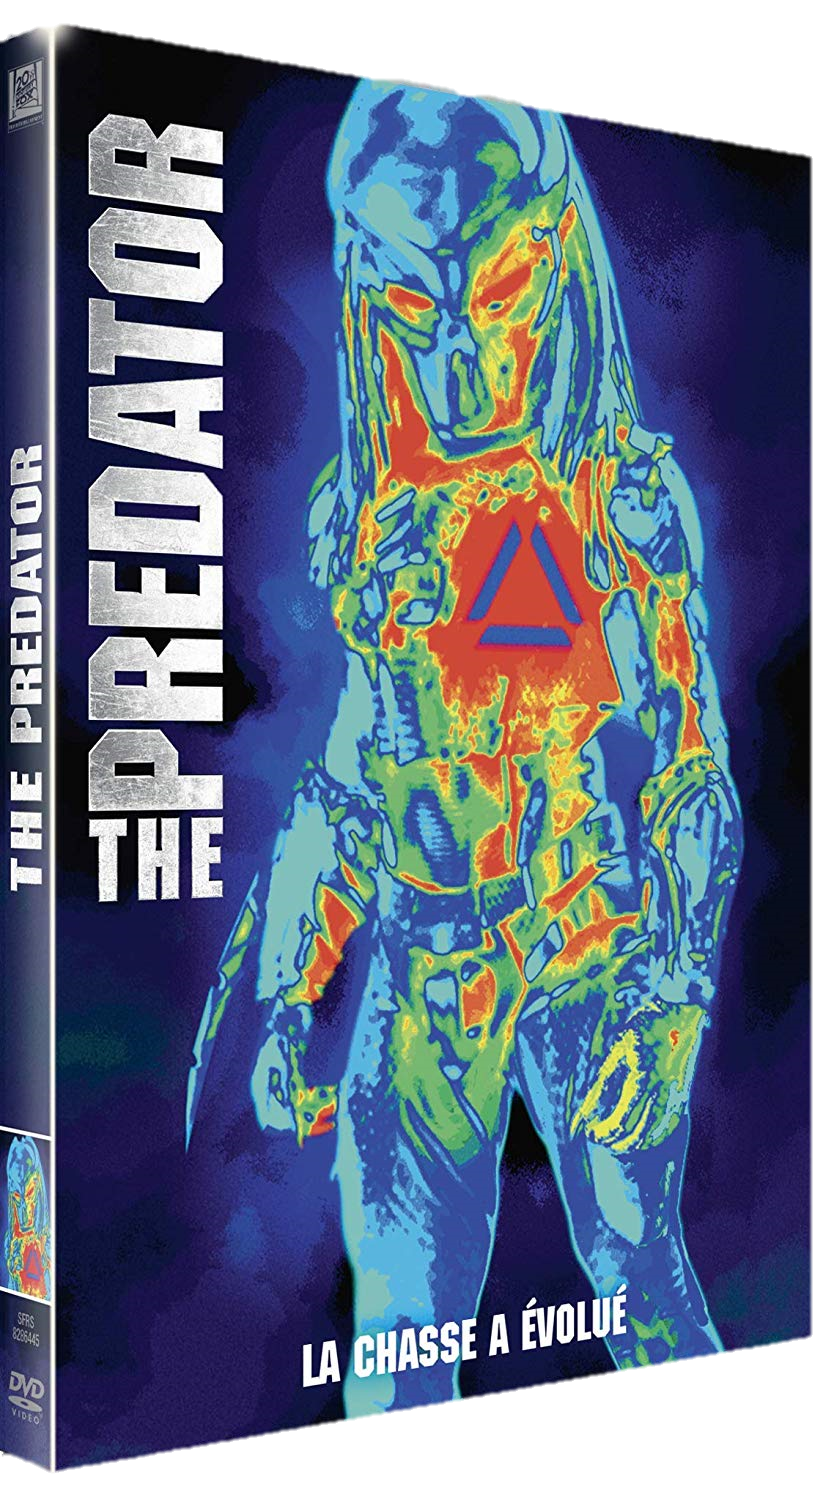 flashvideofilm - The predator " DVD à la location " - Location